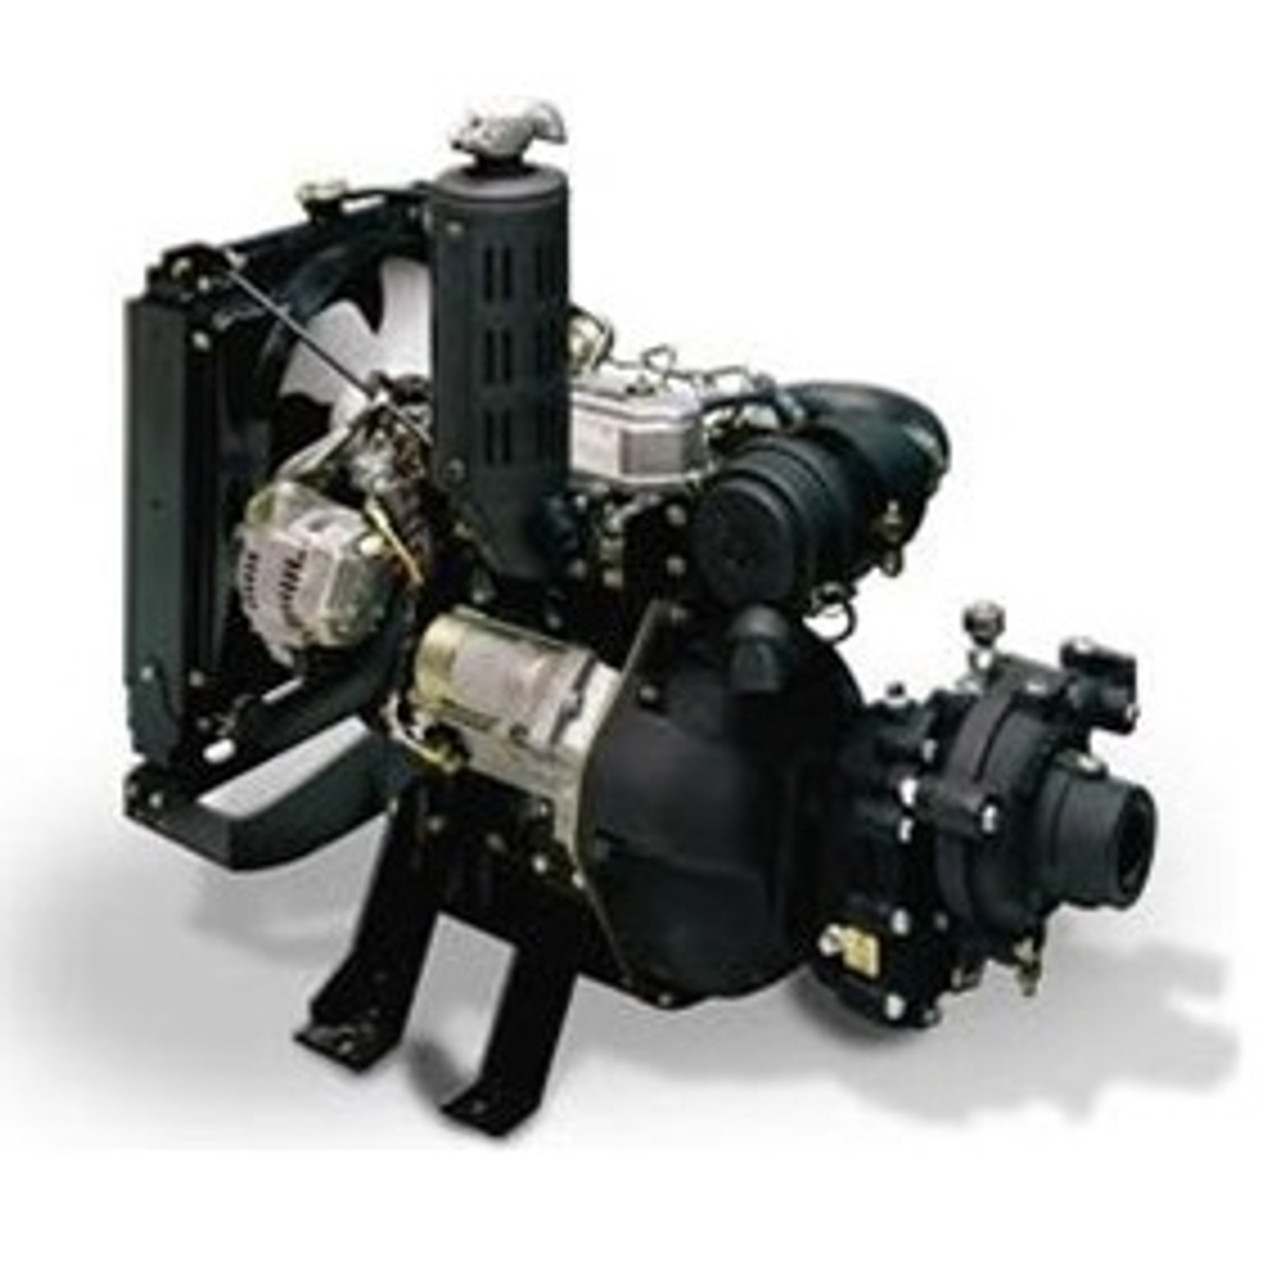 3 Shield-A-Spark Pump (Diesel Engine)